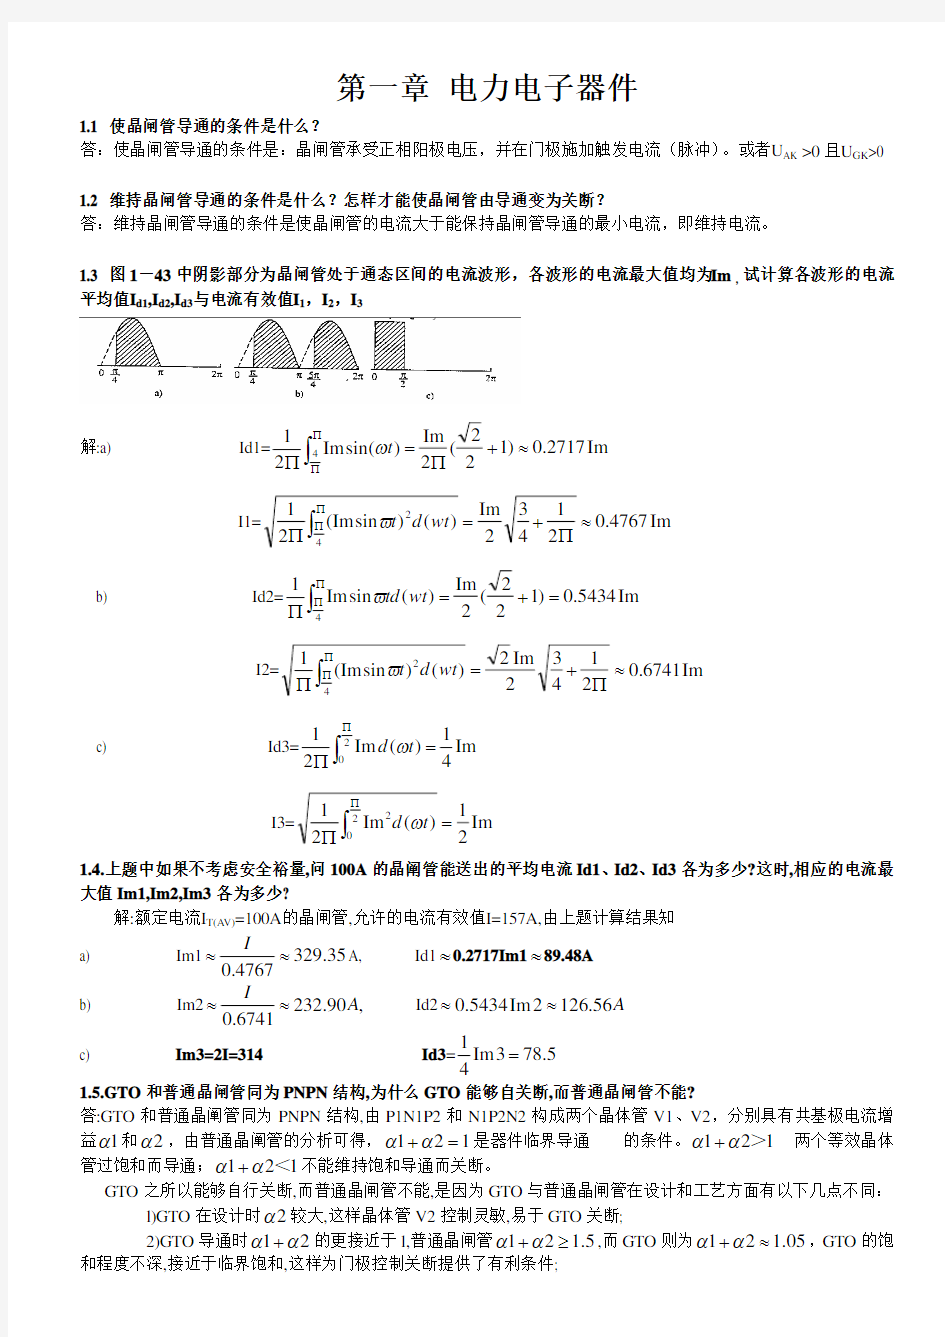 王兆安《电力电子技术》第四版 课后习题答案